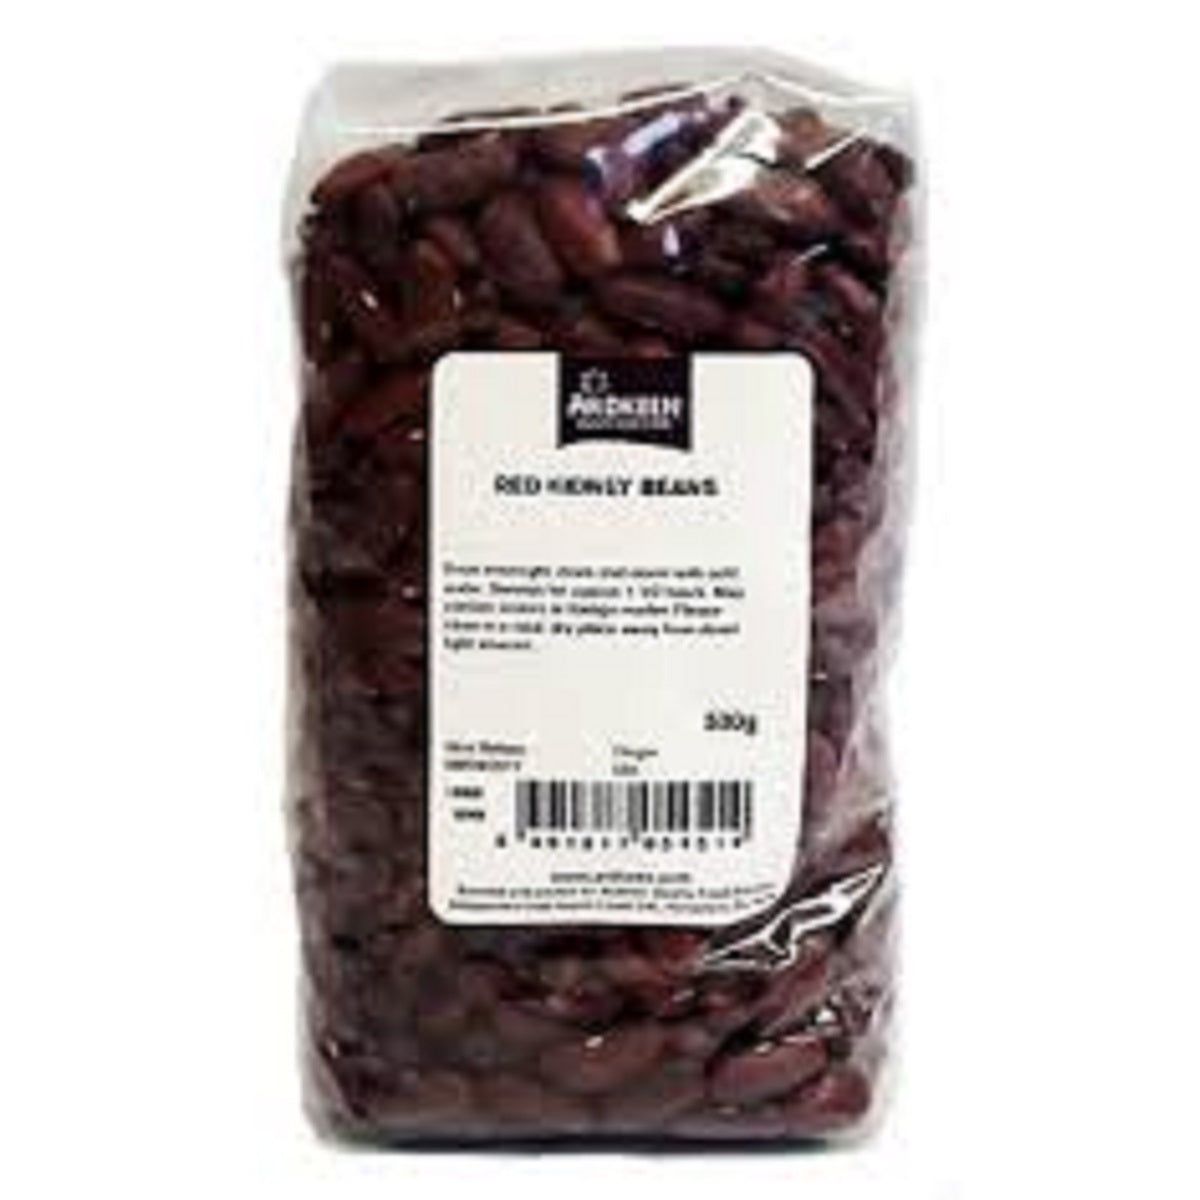 Red Kidney Beans 500g